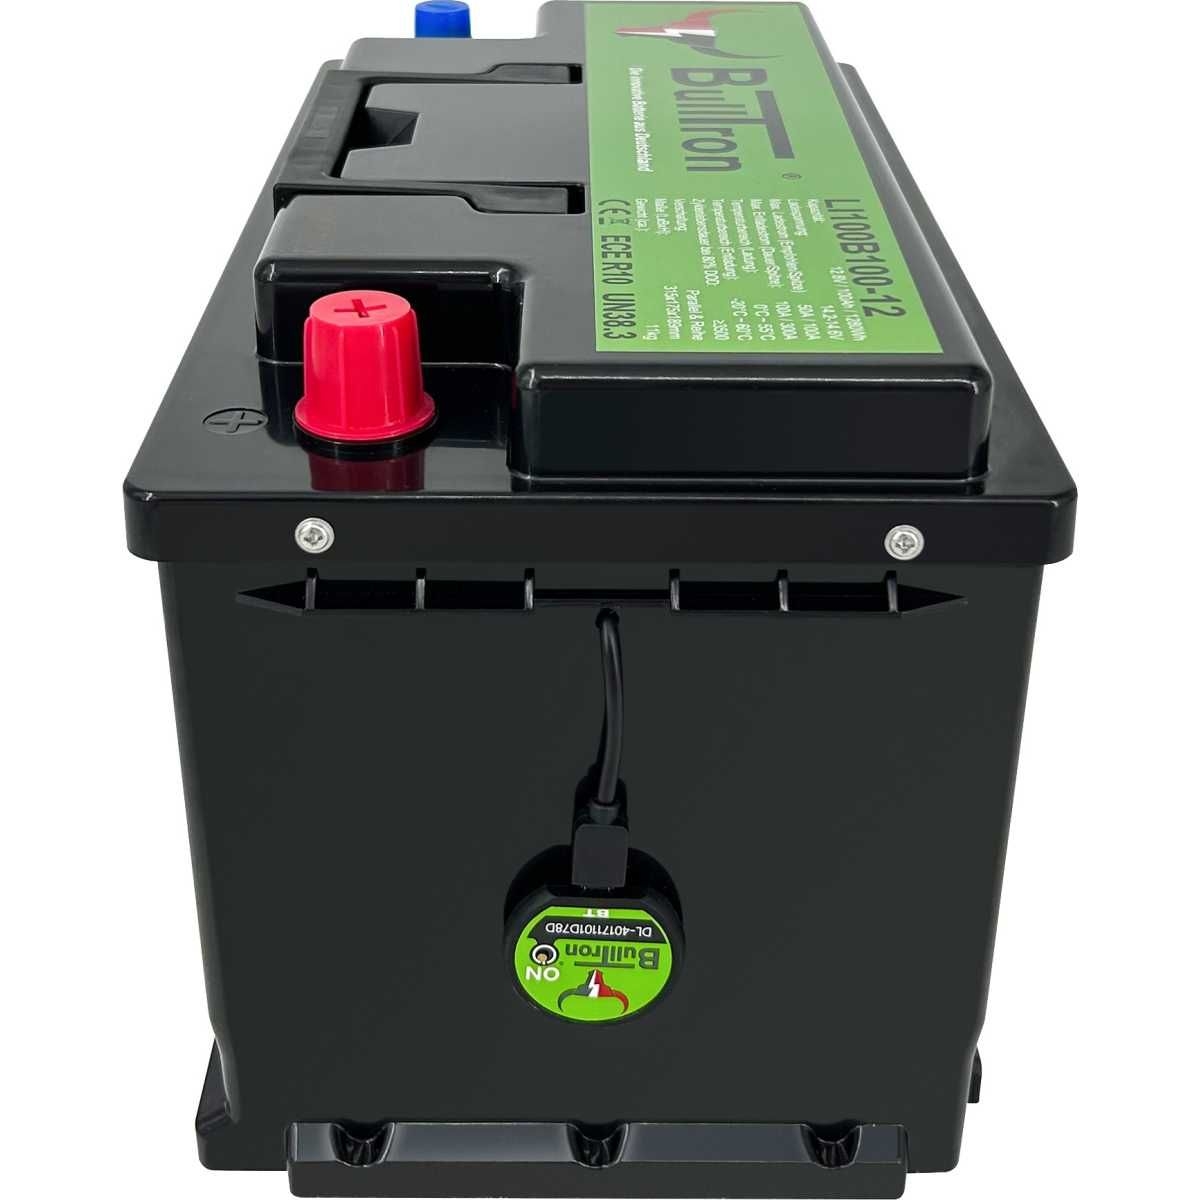 BULLTRON Lithium-Batterie BASIC 100Ah 12V inkl. BMS 100A Dauerstrom - LI100B150-12-B